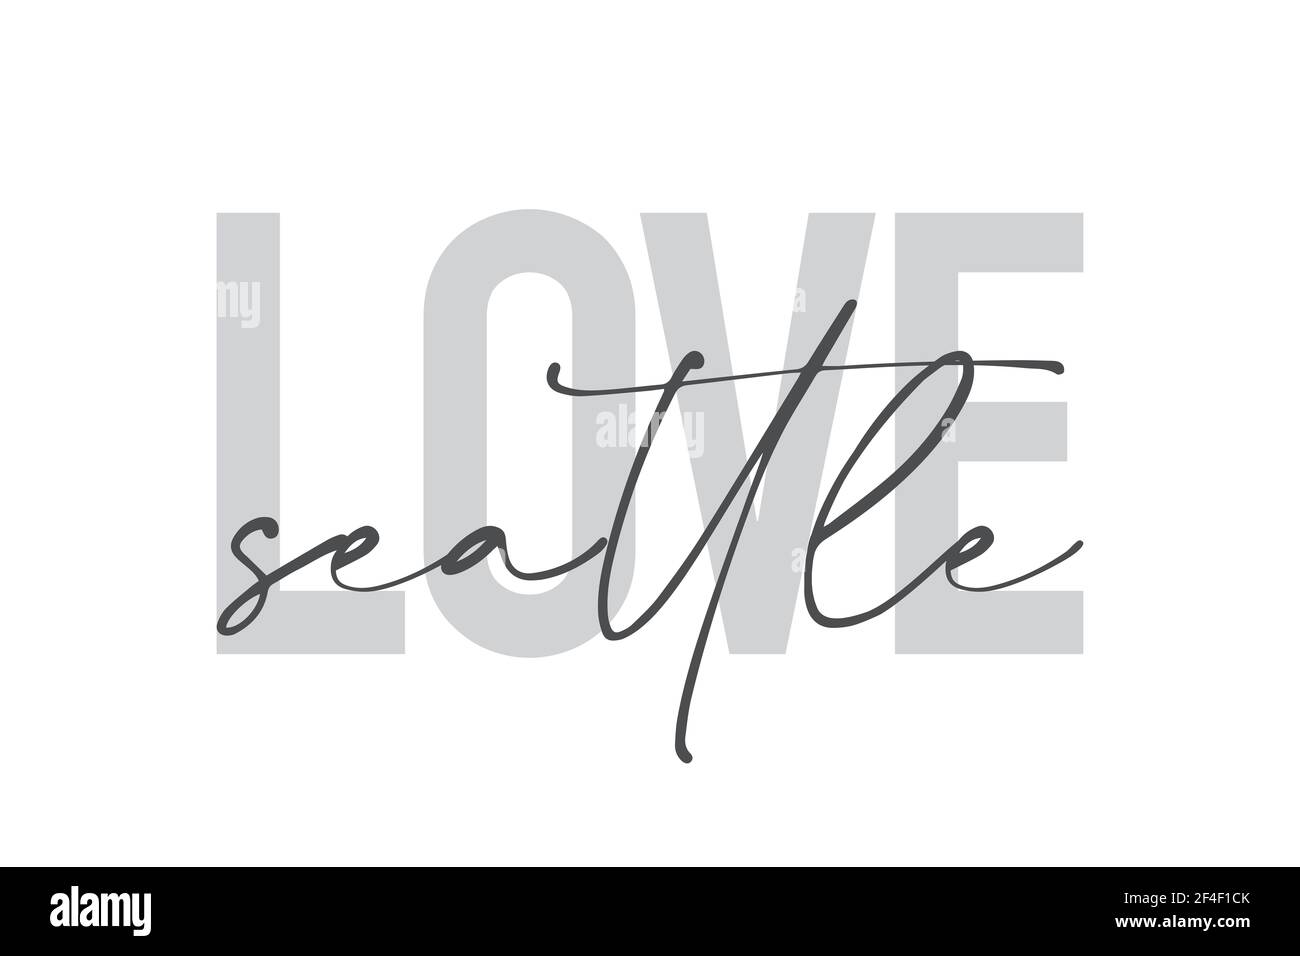 Modernes, urbanes, schlichtes Grafikdesign eines Sprichwort "Love Seattle" in grauen Farben. Trendige, coole, handgeschriebene Typografie Stockfoto